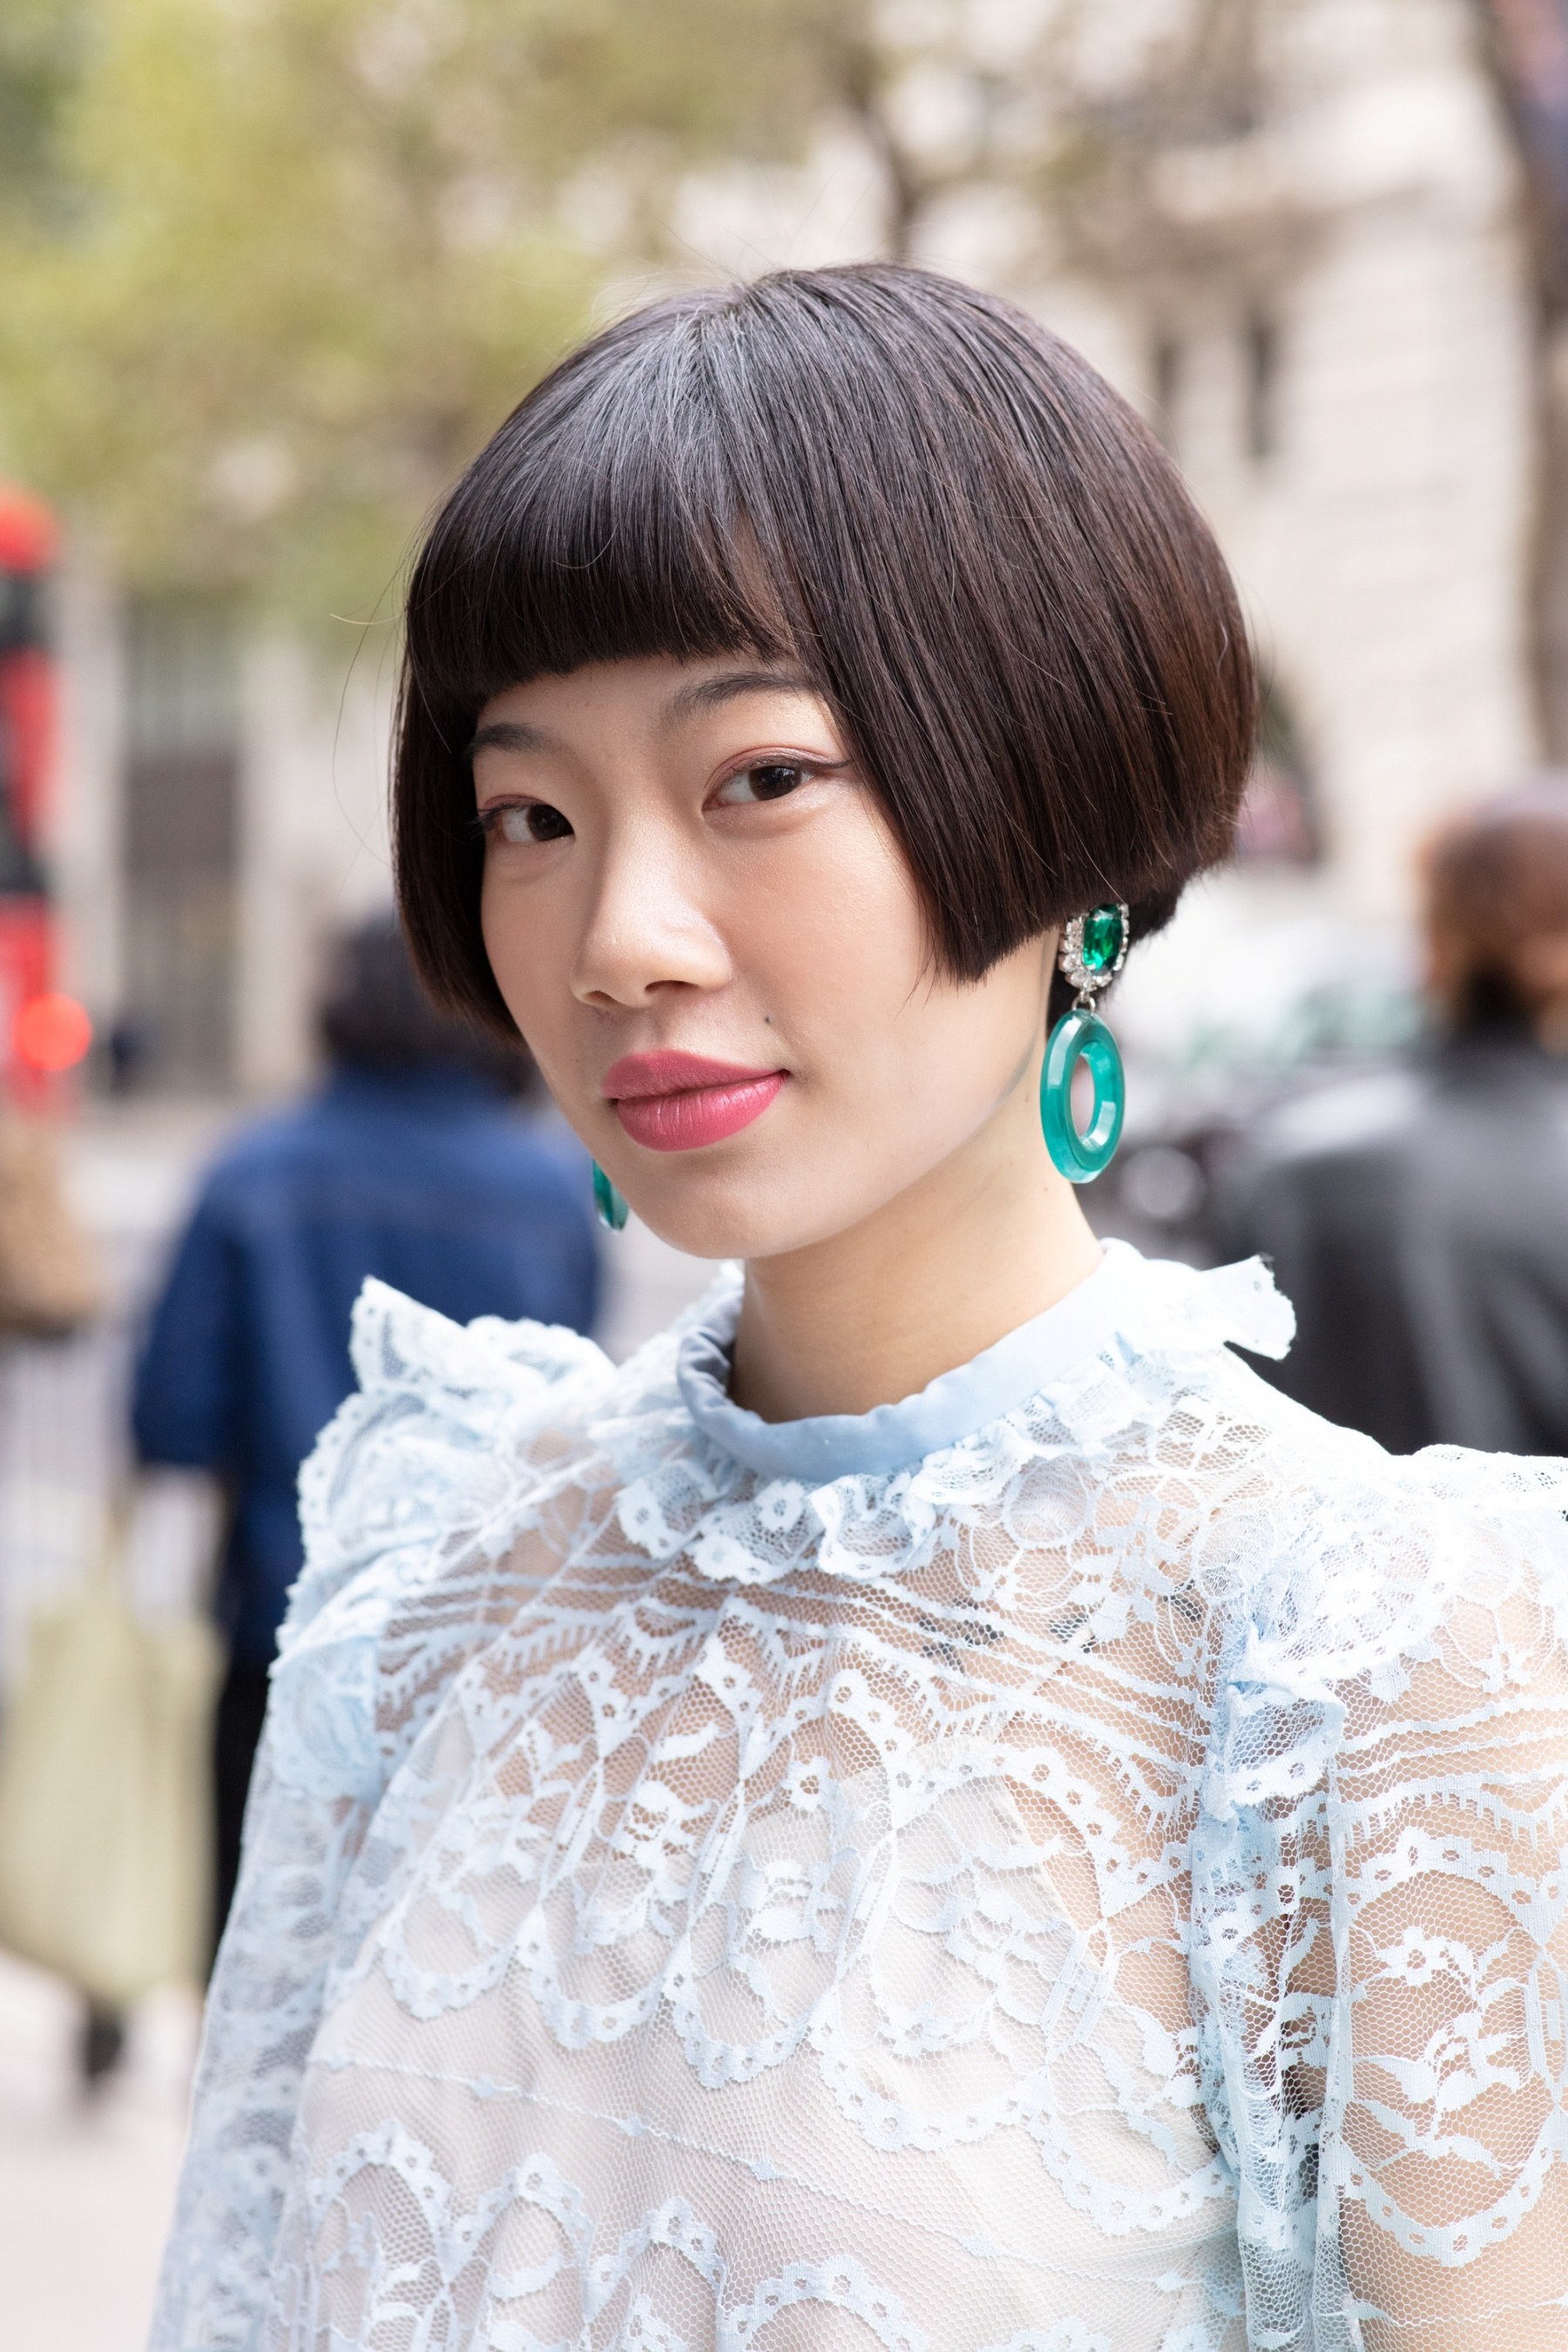 Femme asiatique aux cheveux courts avec une frange